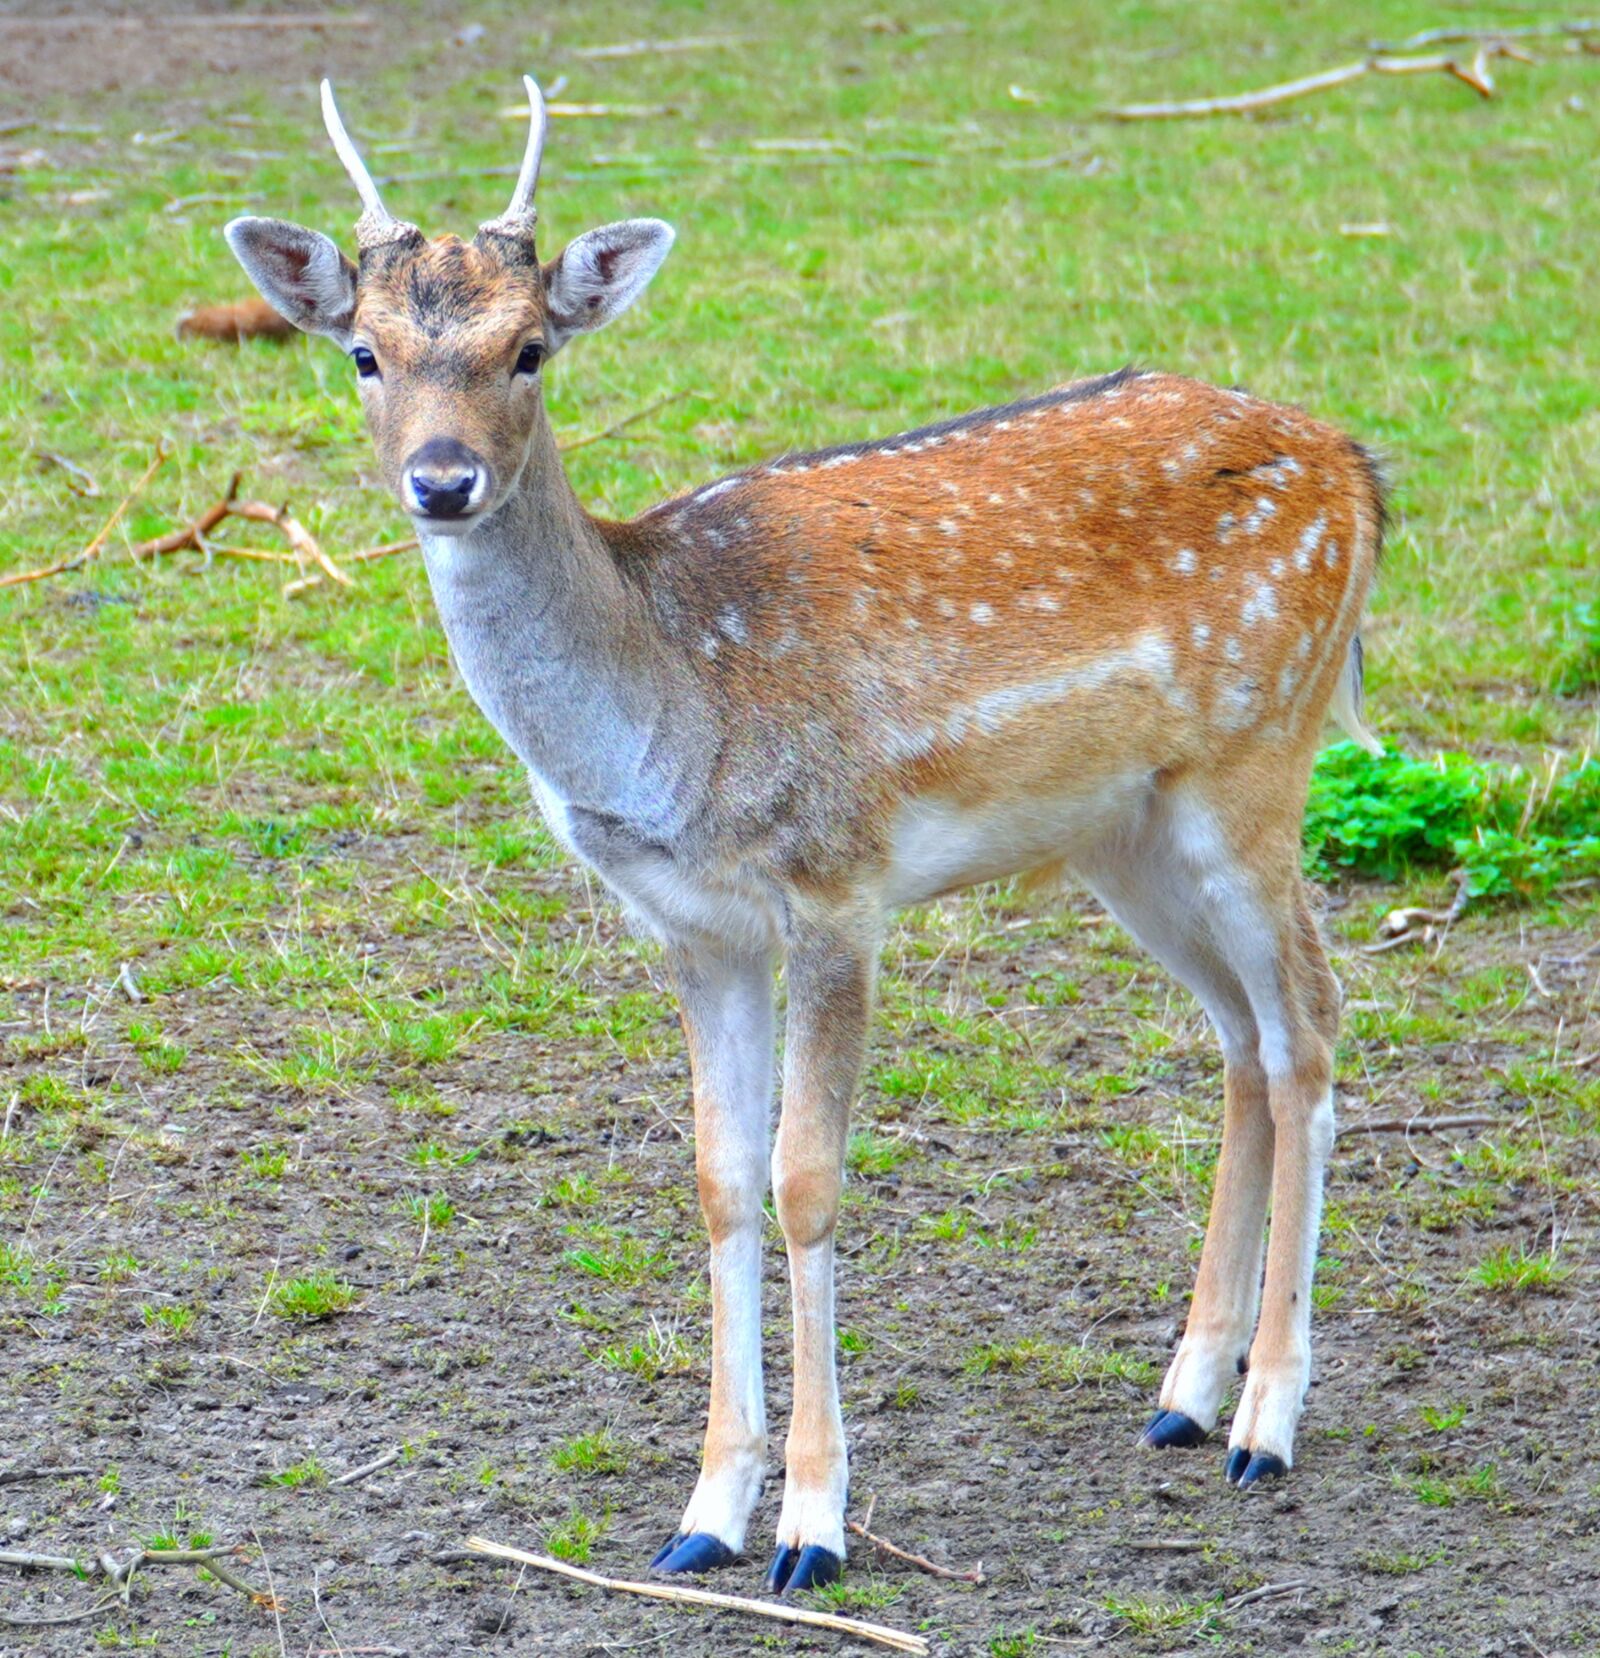 Sony a6400 sample photo. Roe deer, deer, antlers photography